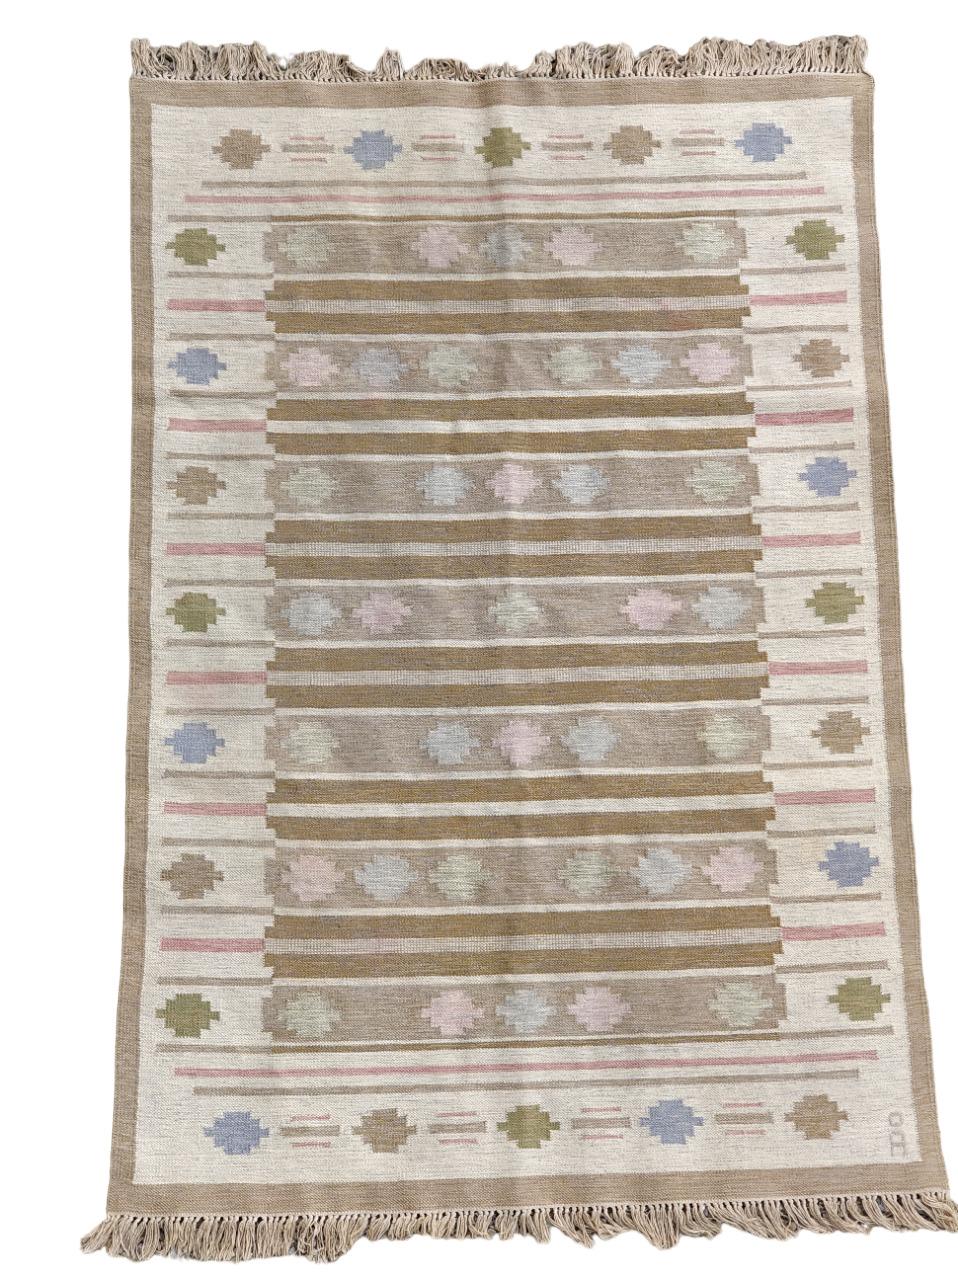 
Tapis Kilim à tissage plat de la designer textile suédoise Anna Johanna Ångström, présentant des motifs géométriques et des nuances de brun. Avec sa signature
Née en 1938, Anna Johanna Ångström est une designer textile suédoise reconnue pour son